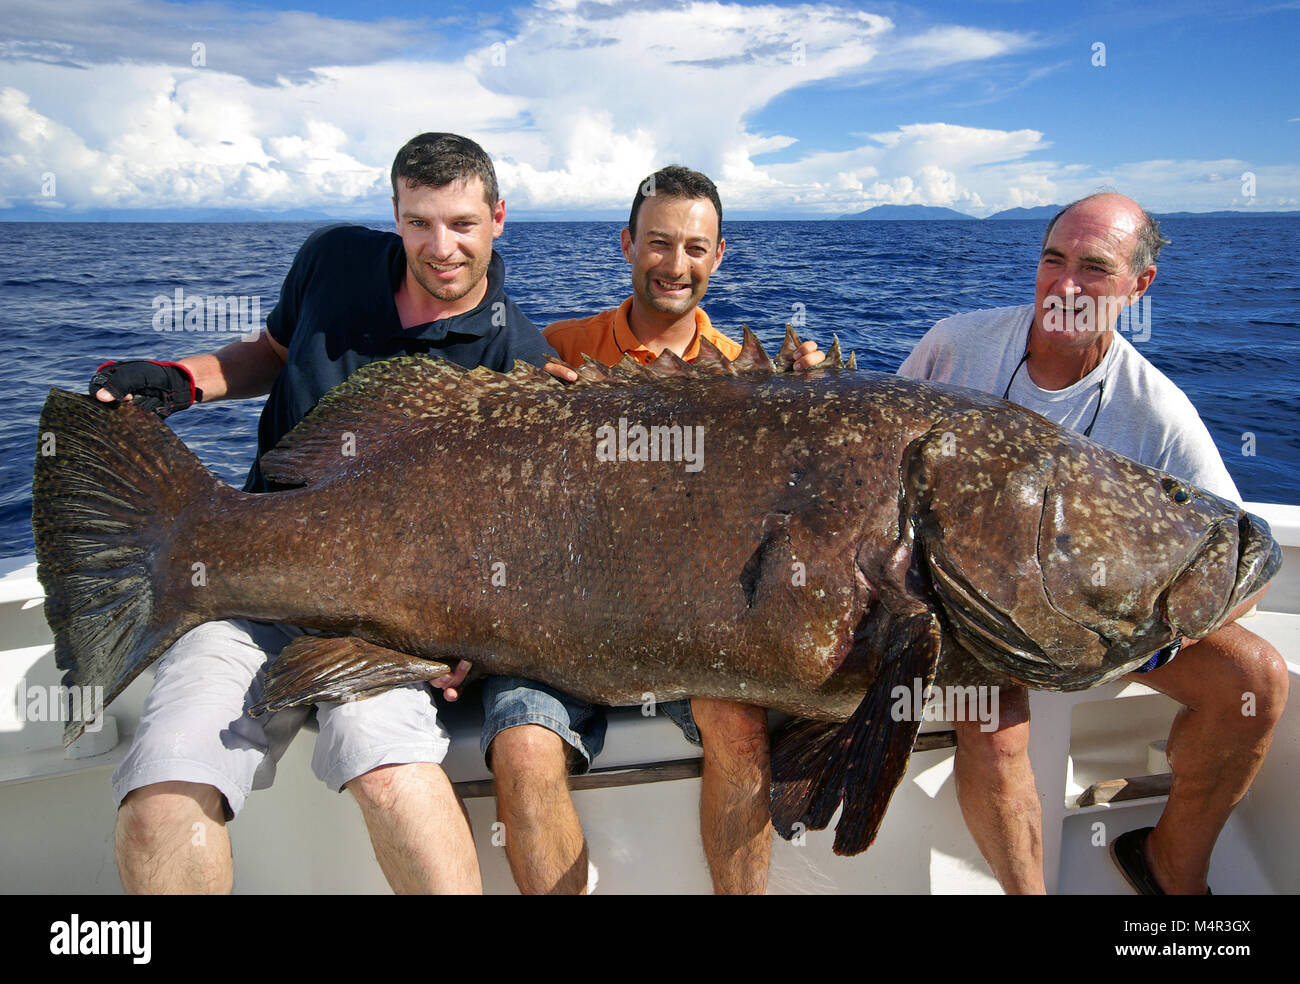 Felice pescatori tenendo un le cernie giganti. La pesca in mare profondo, Big game fishing, cattura di pesce Foto Stock